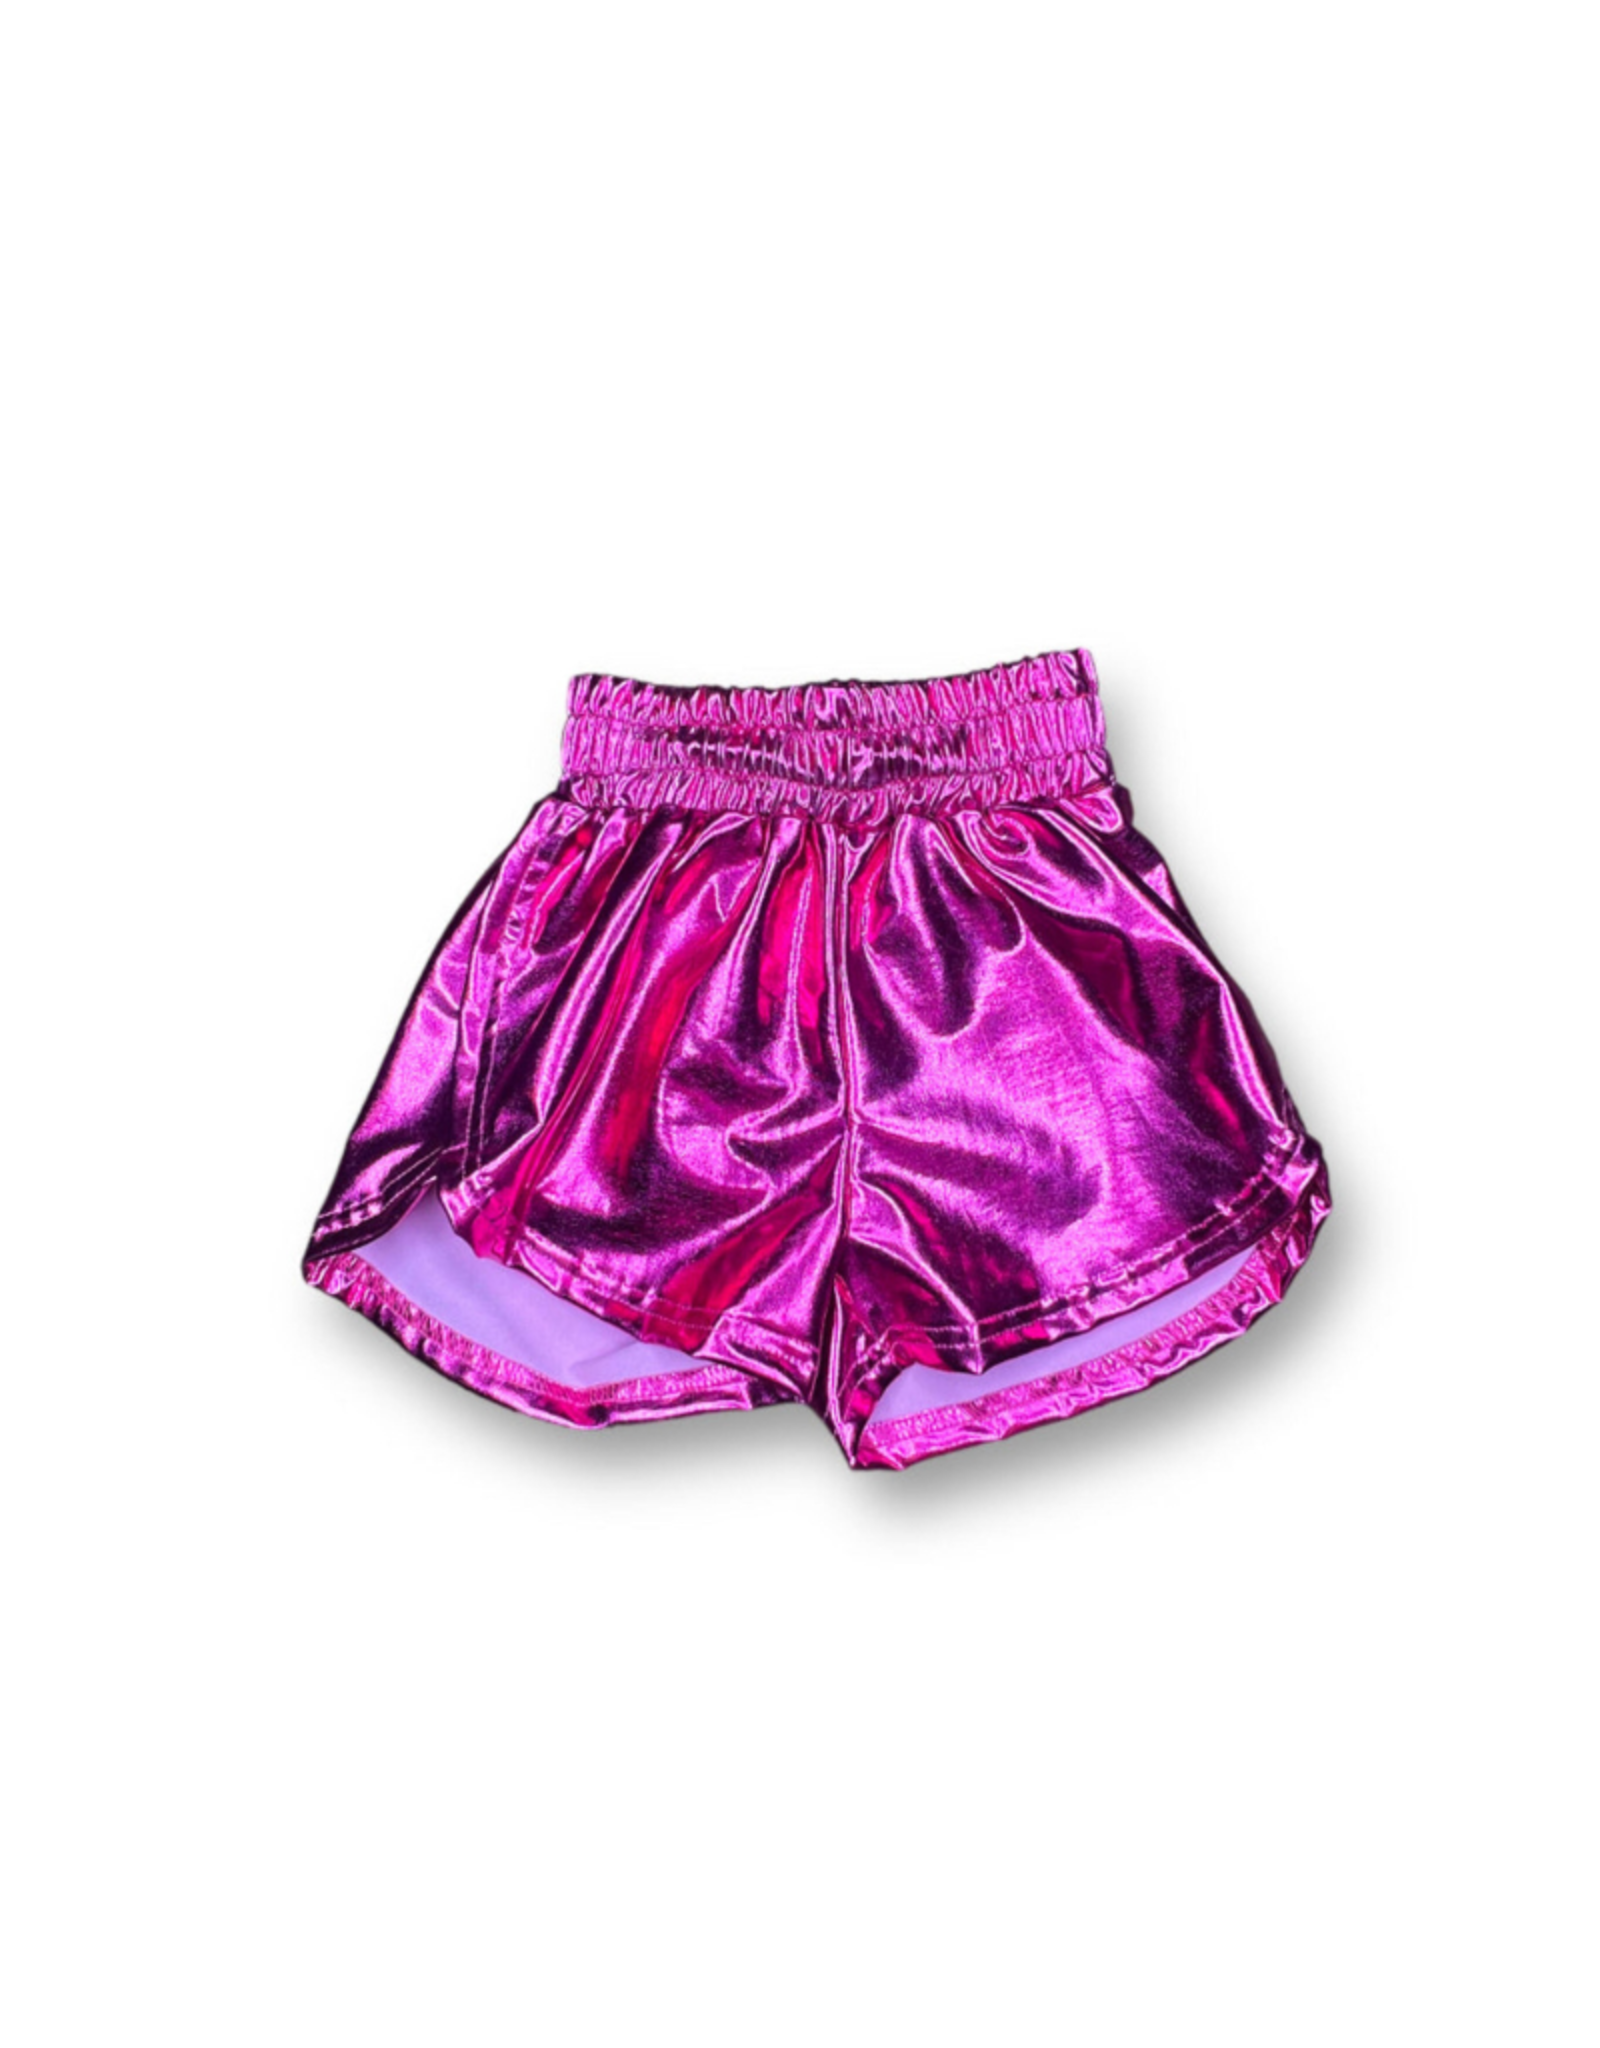 Belle Cher Hot Pink Metallic Shorts